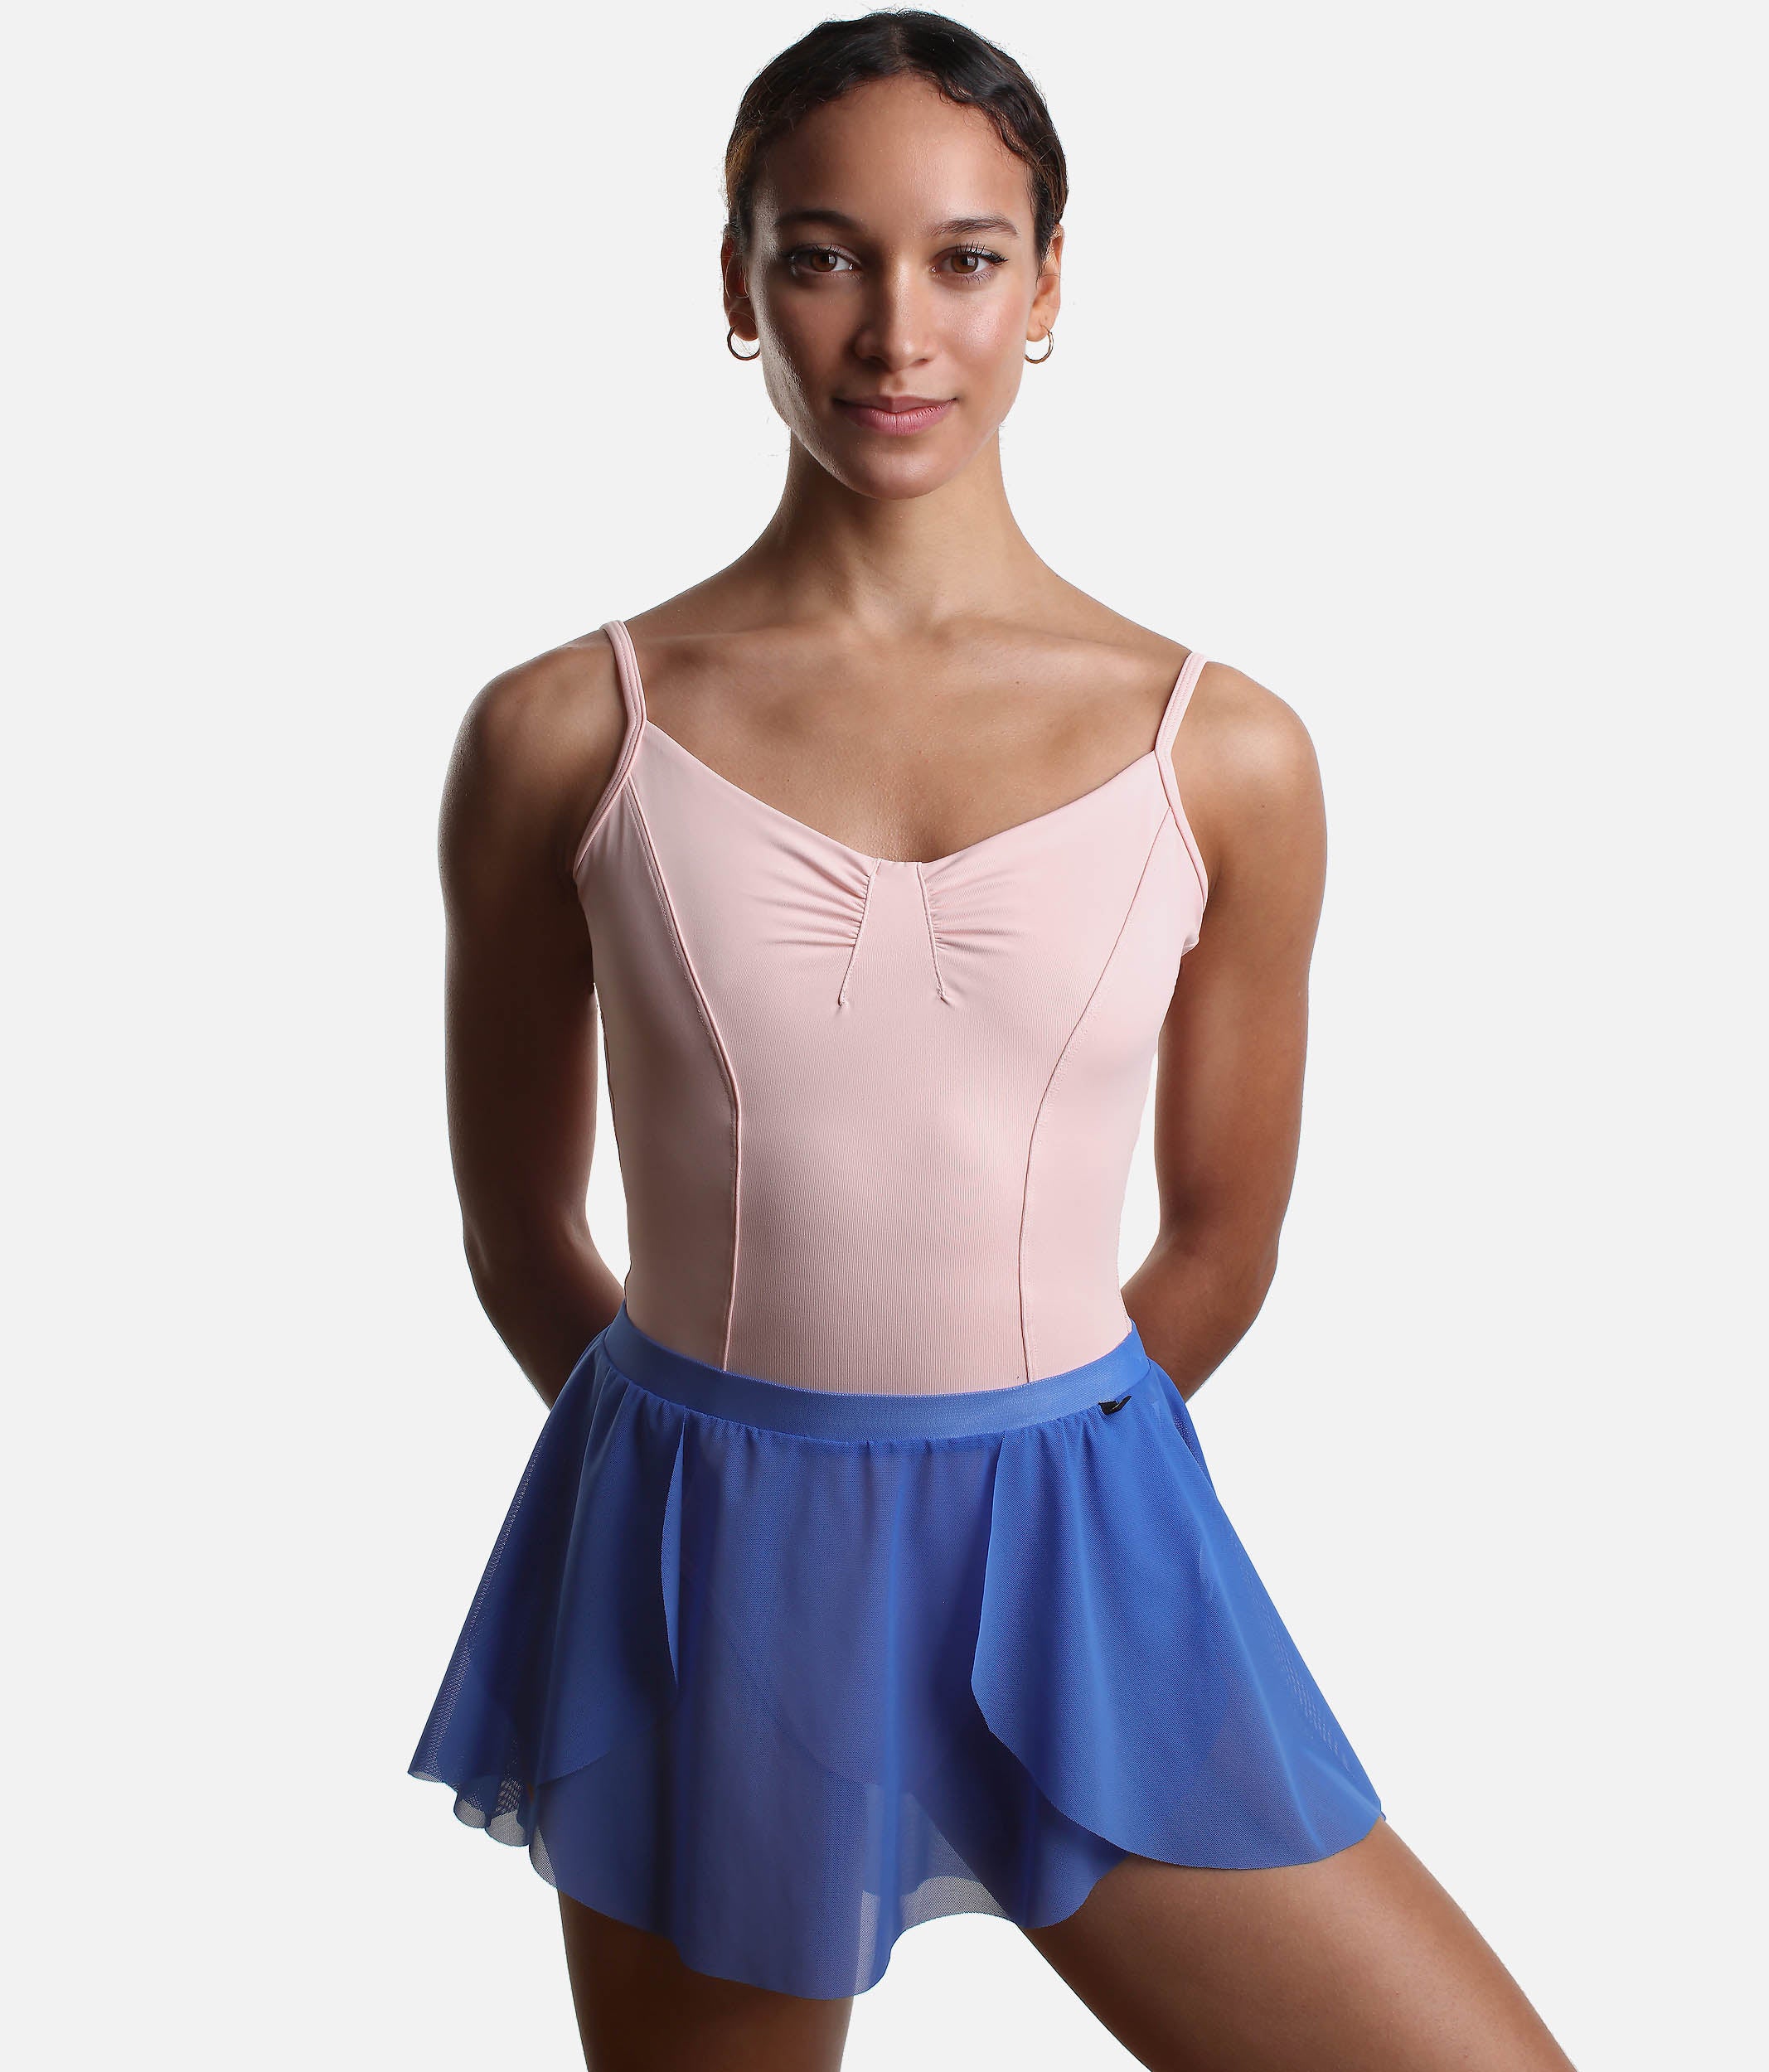 Short Pull On Ballet Skirt, Asymmetric Design - 2114